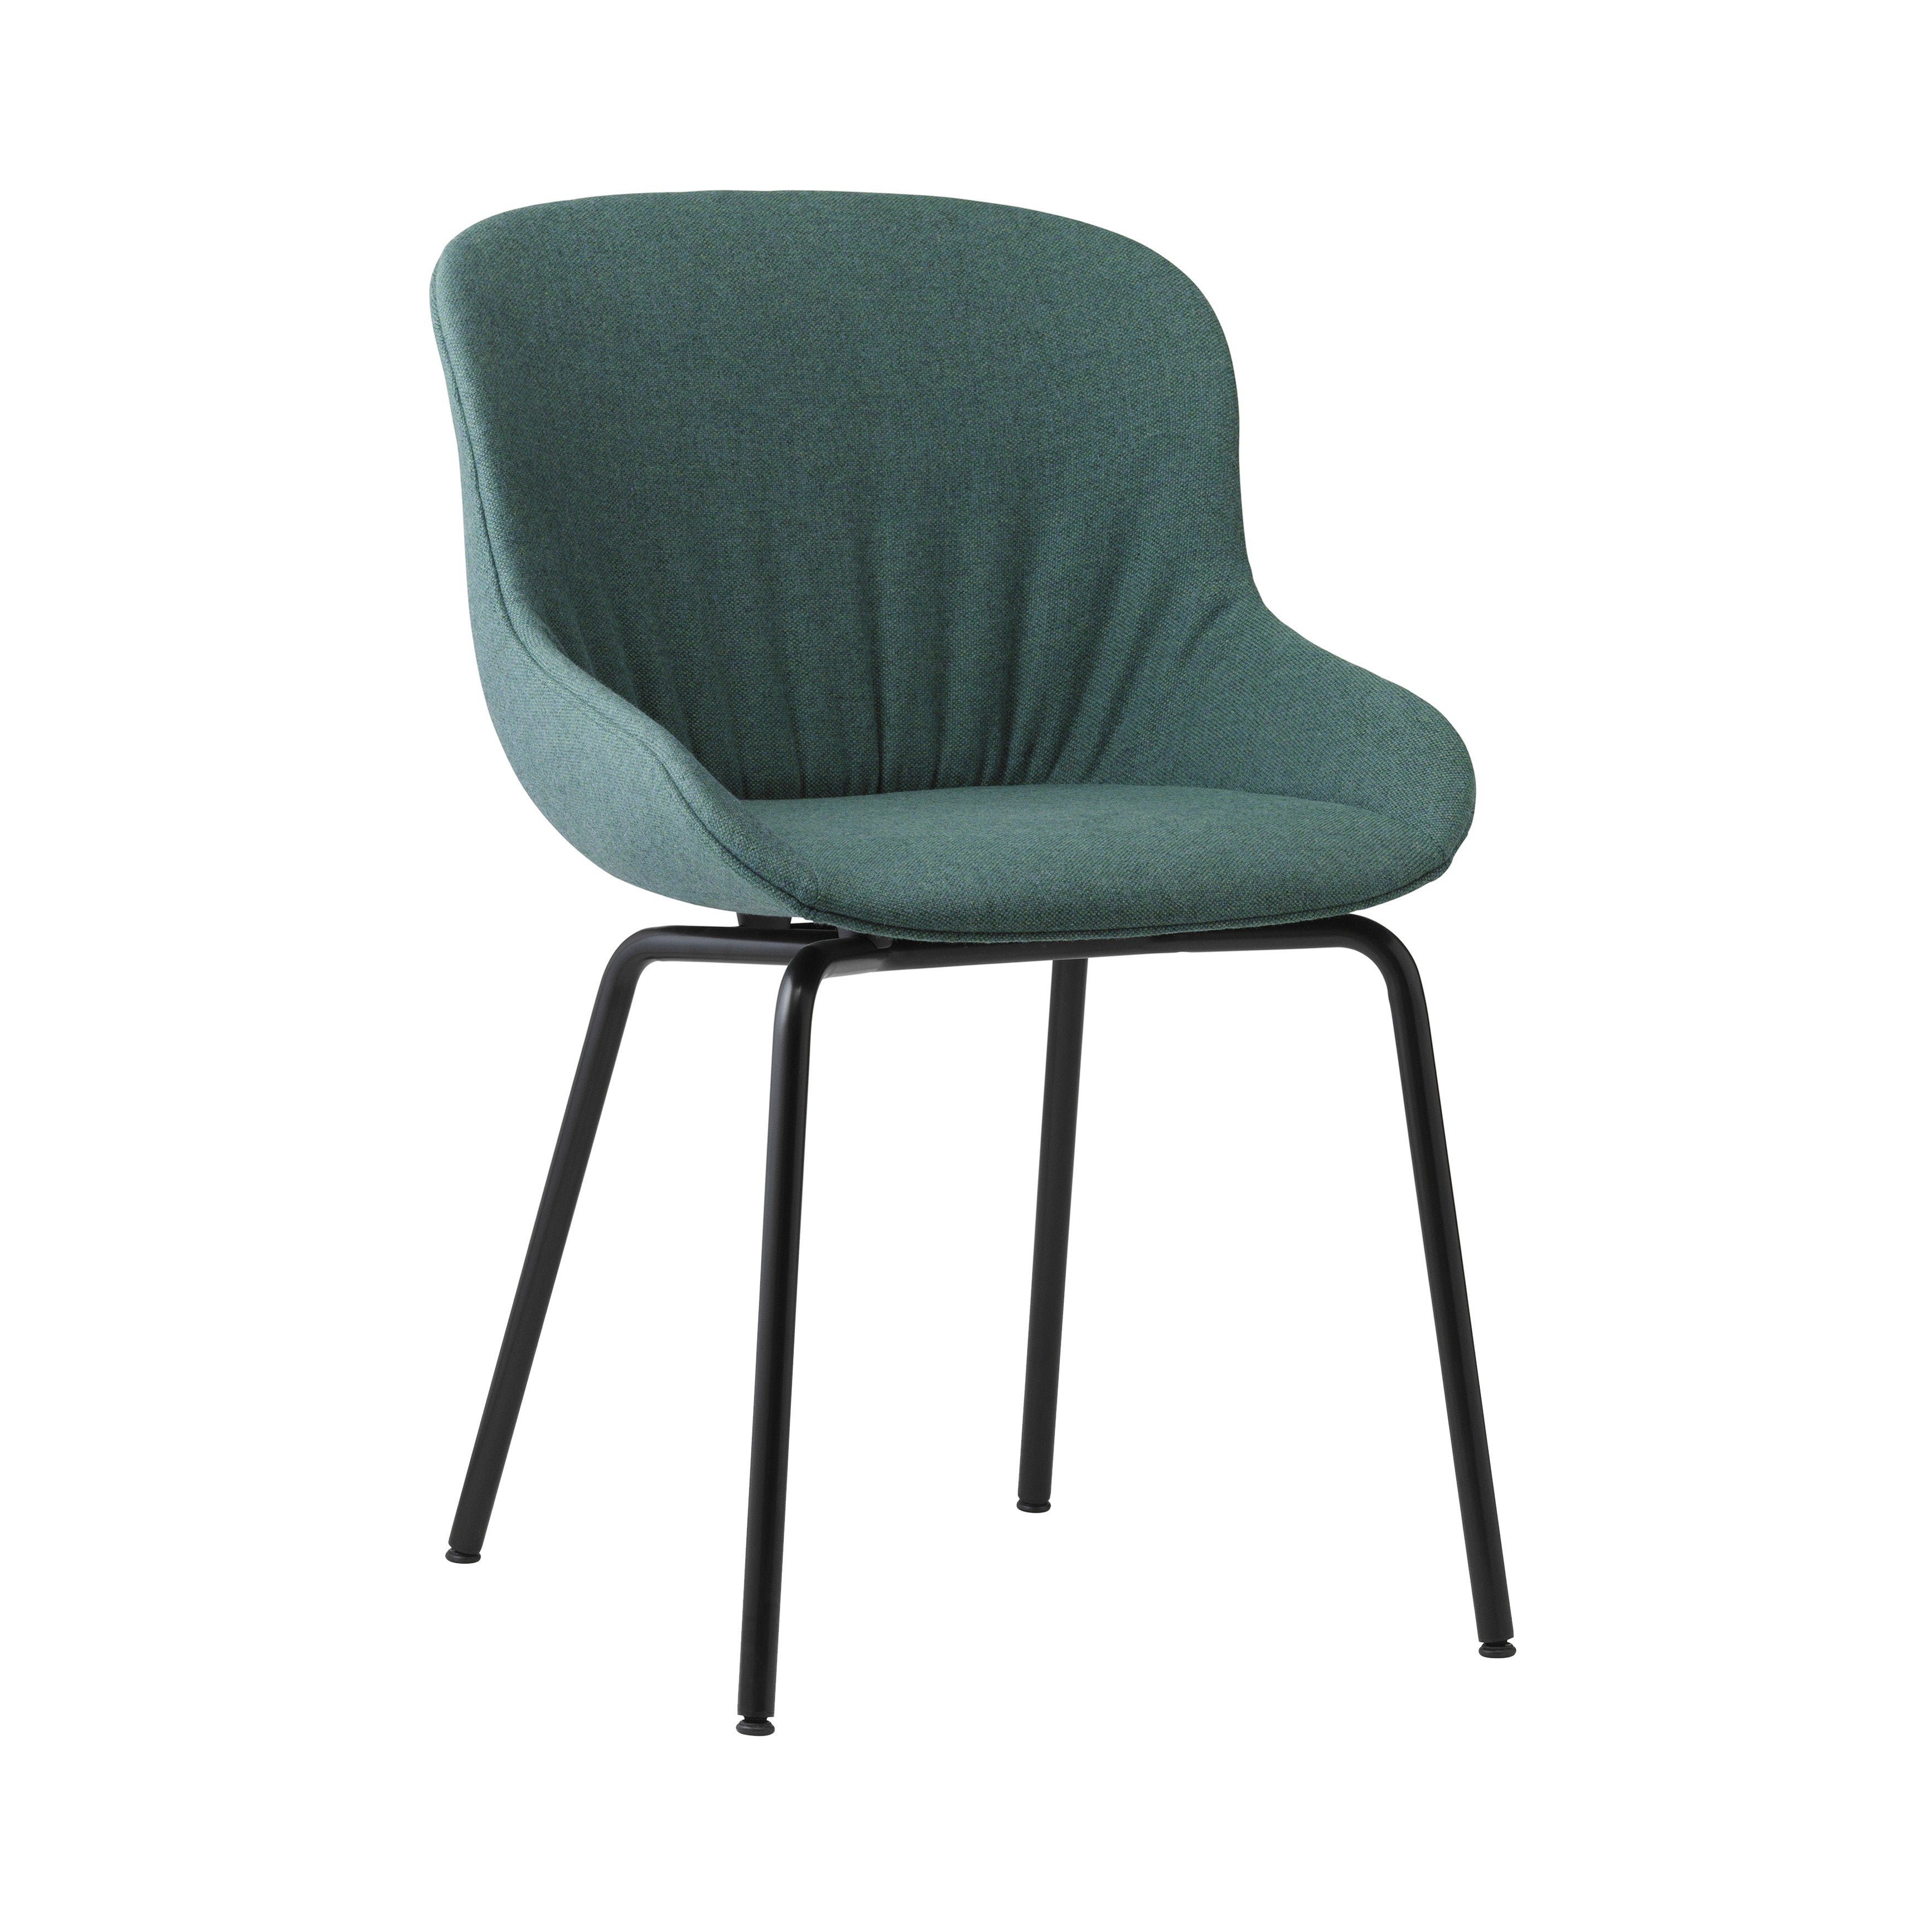 Hyg Comfort Chair: Steel Base + Full Upholstered + Black